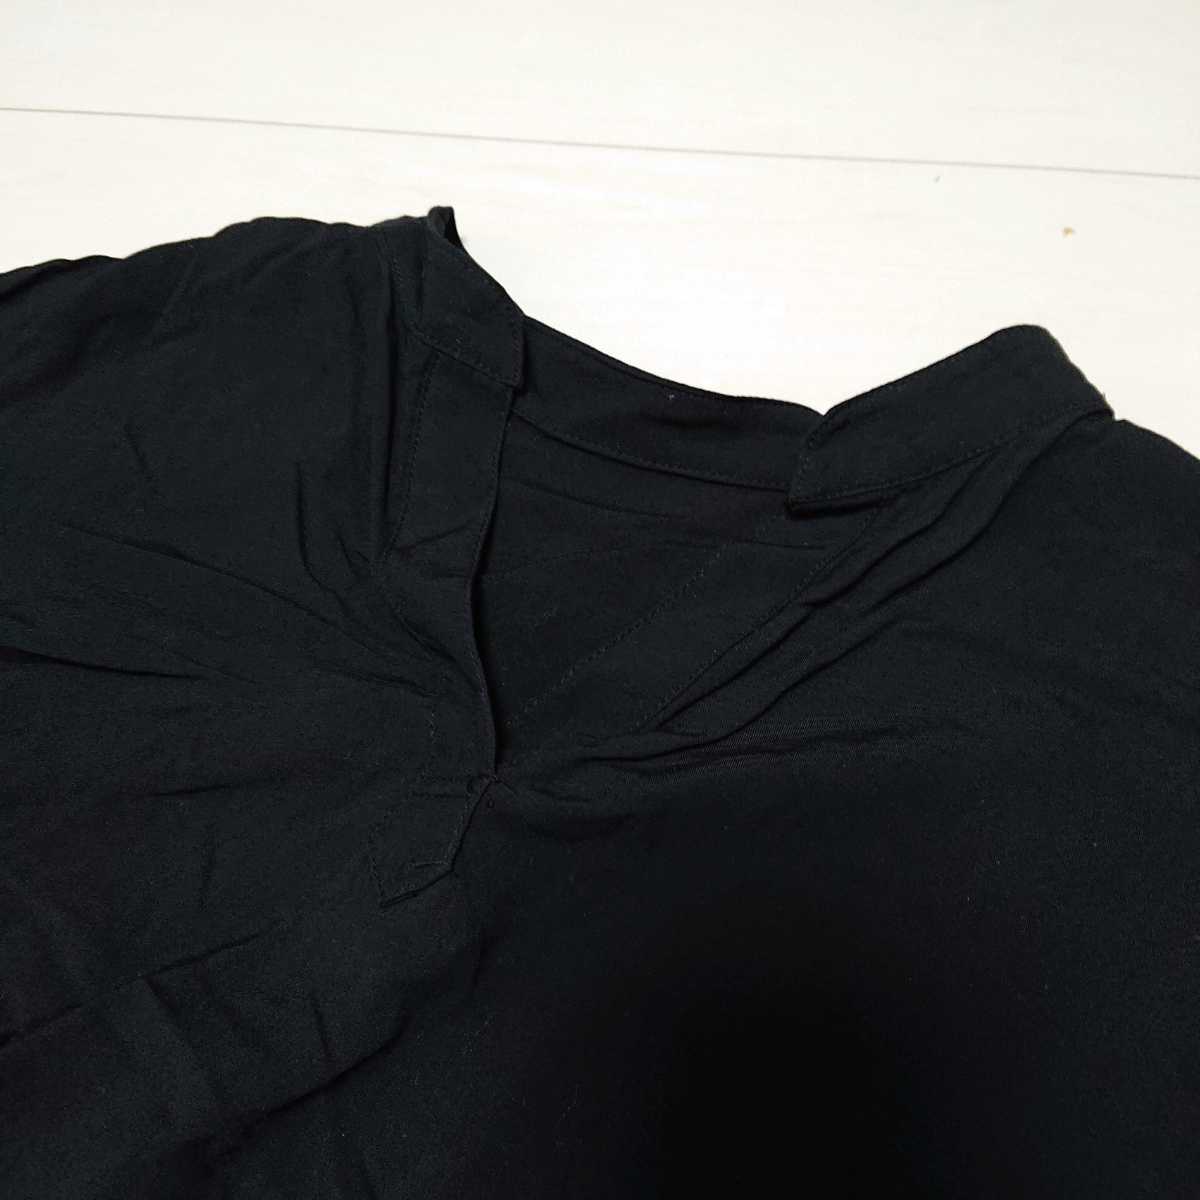 送料無料 レディースLL XL 長袖 七分袖 シャツ ブラウス ブラック jk026 の画像2